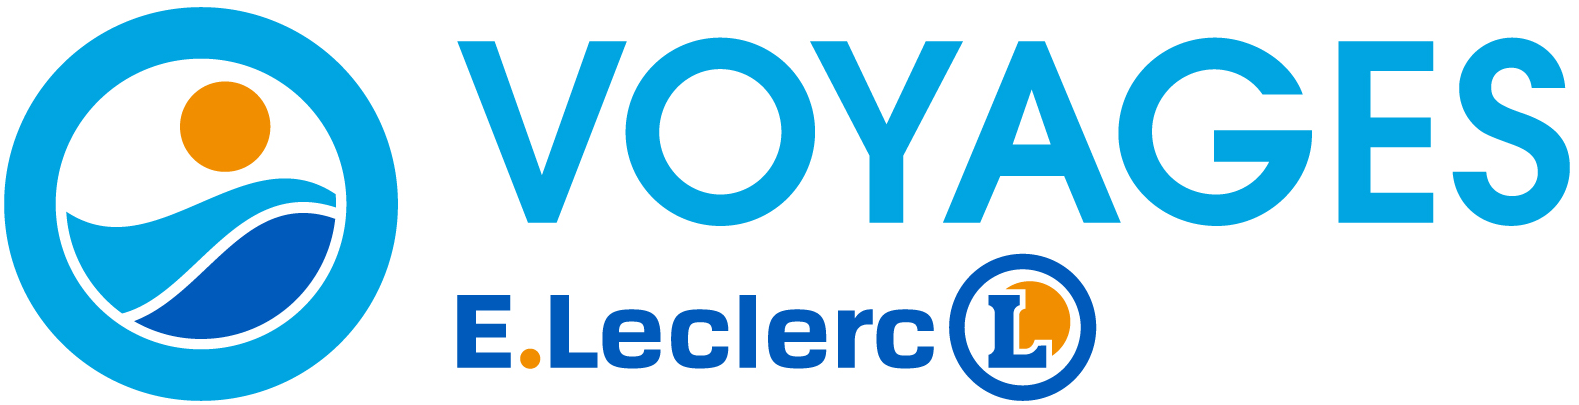 Voyage Leclerc logo